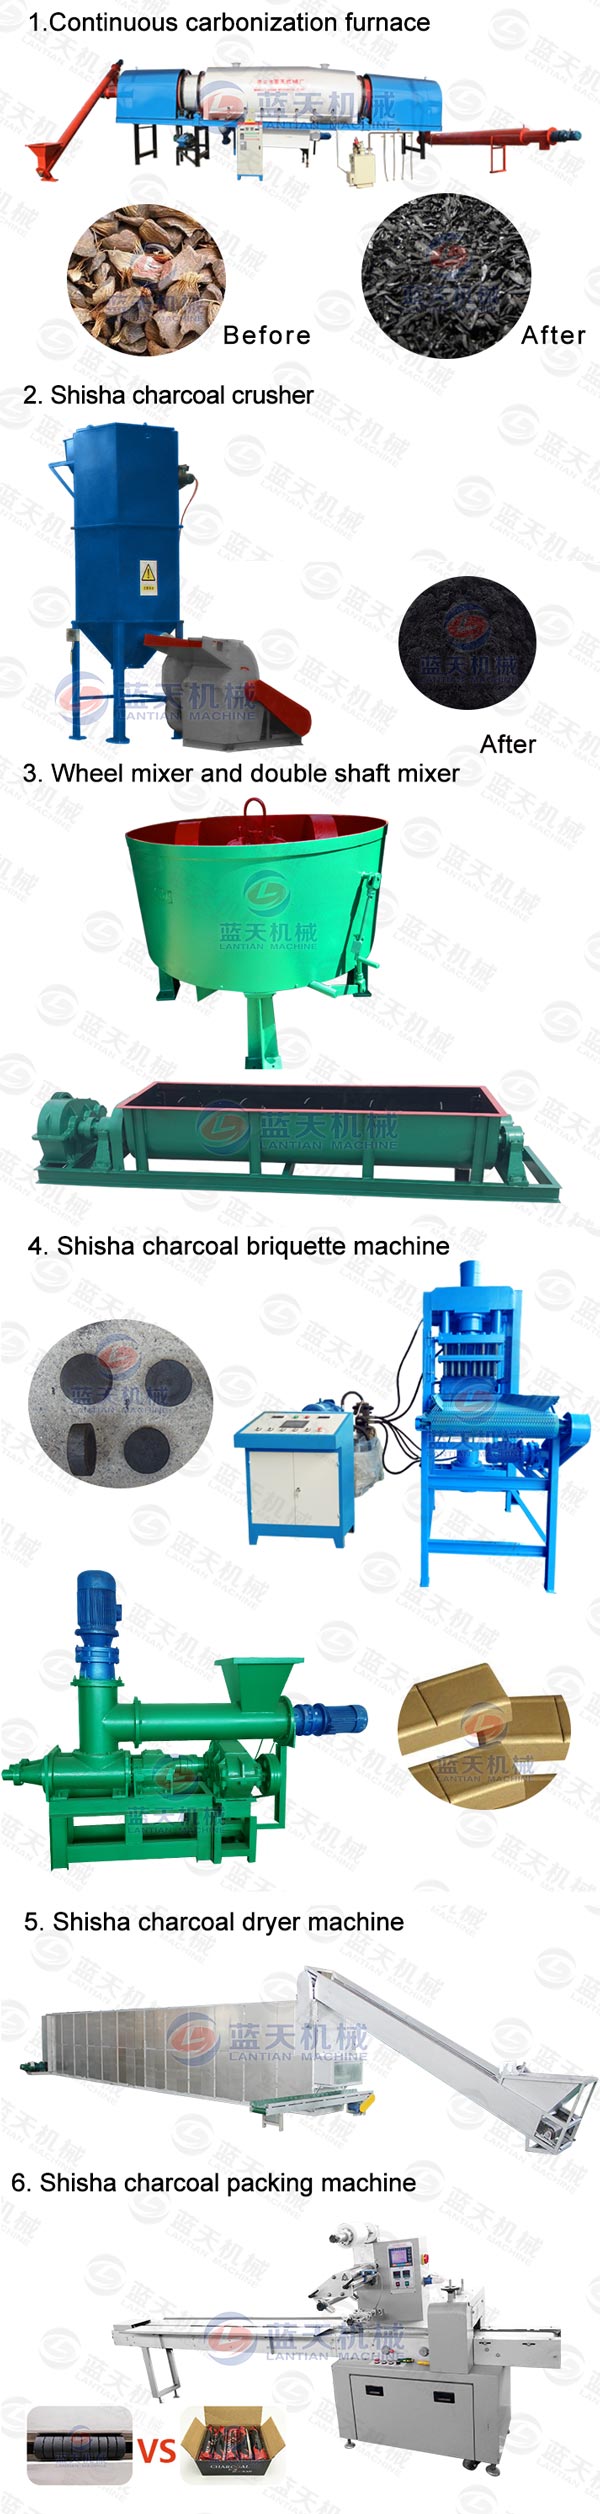 shisha charcoal dryers